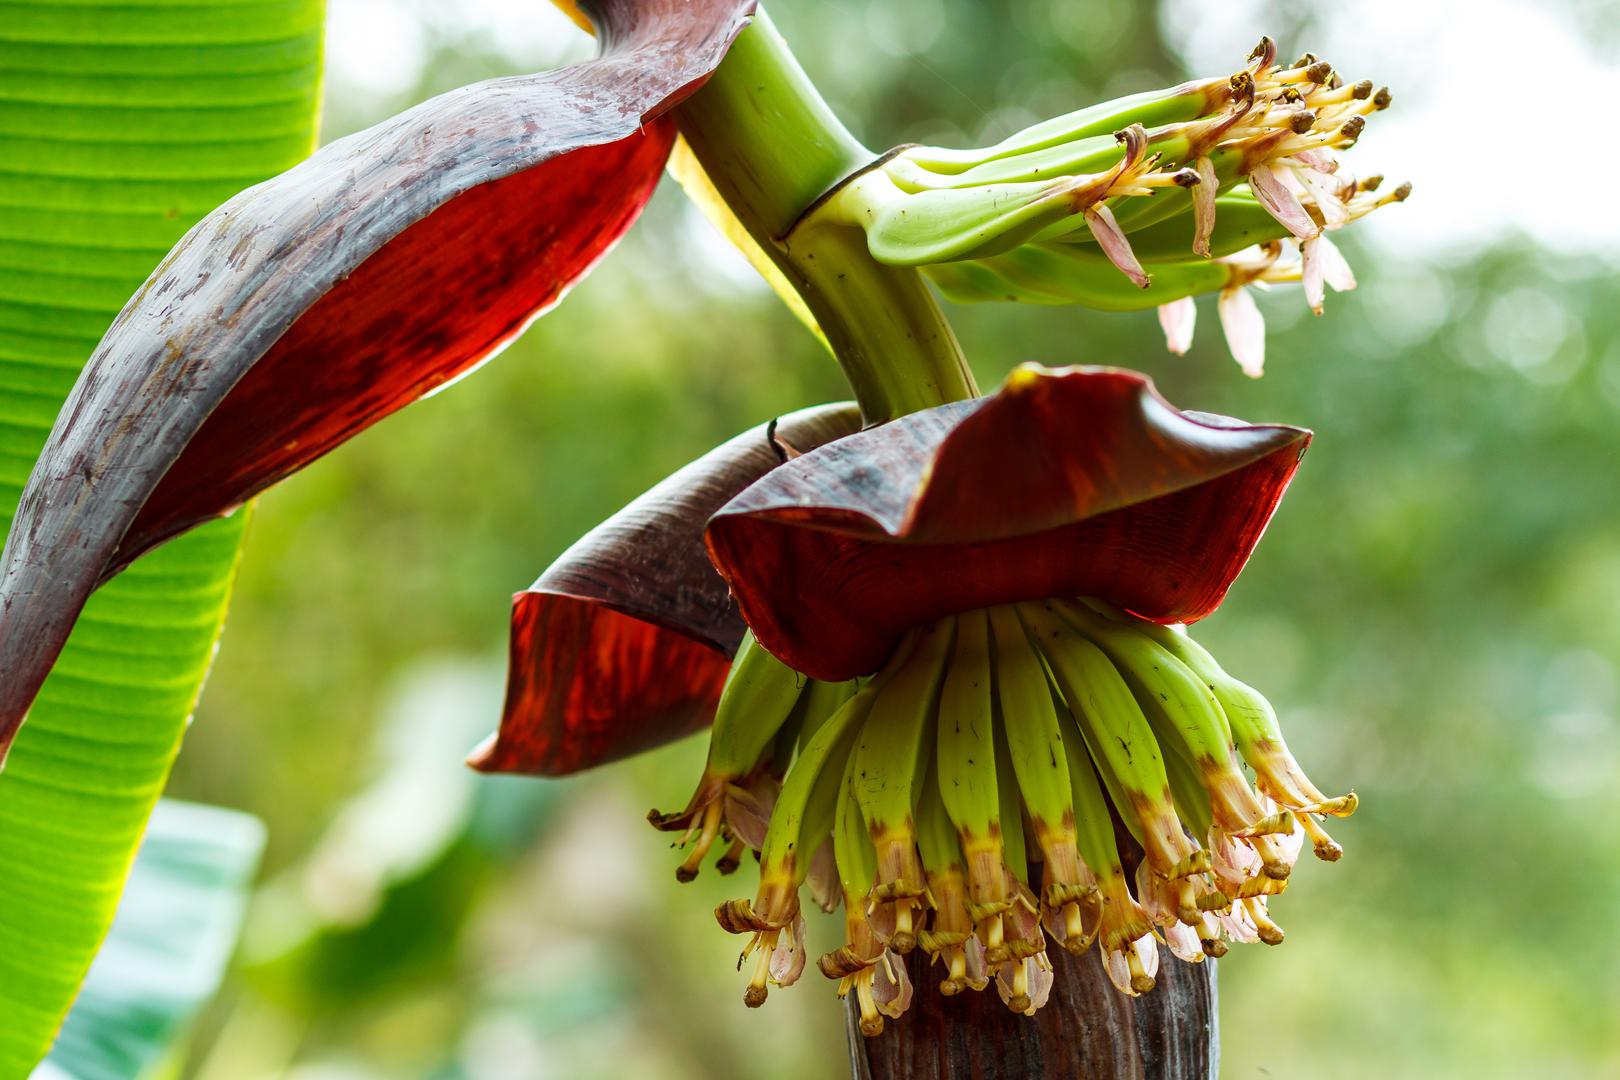 Možete li pogoditi koji plod izraste iz ovog egzotičnog cvijeta? Odgovor je banana!